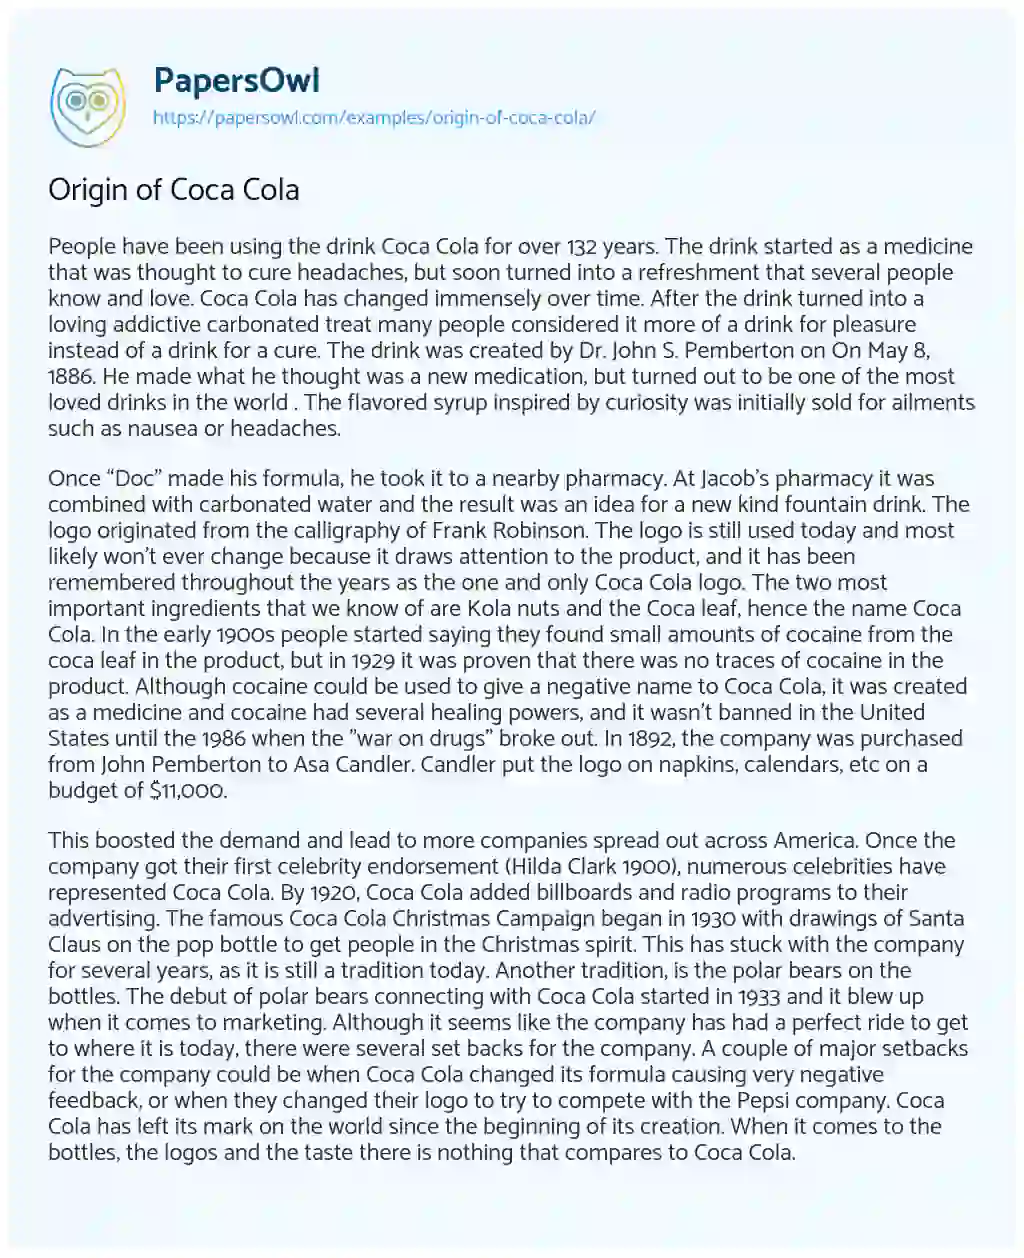 Essay on Origin of Coca Cola